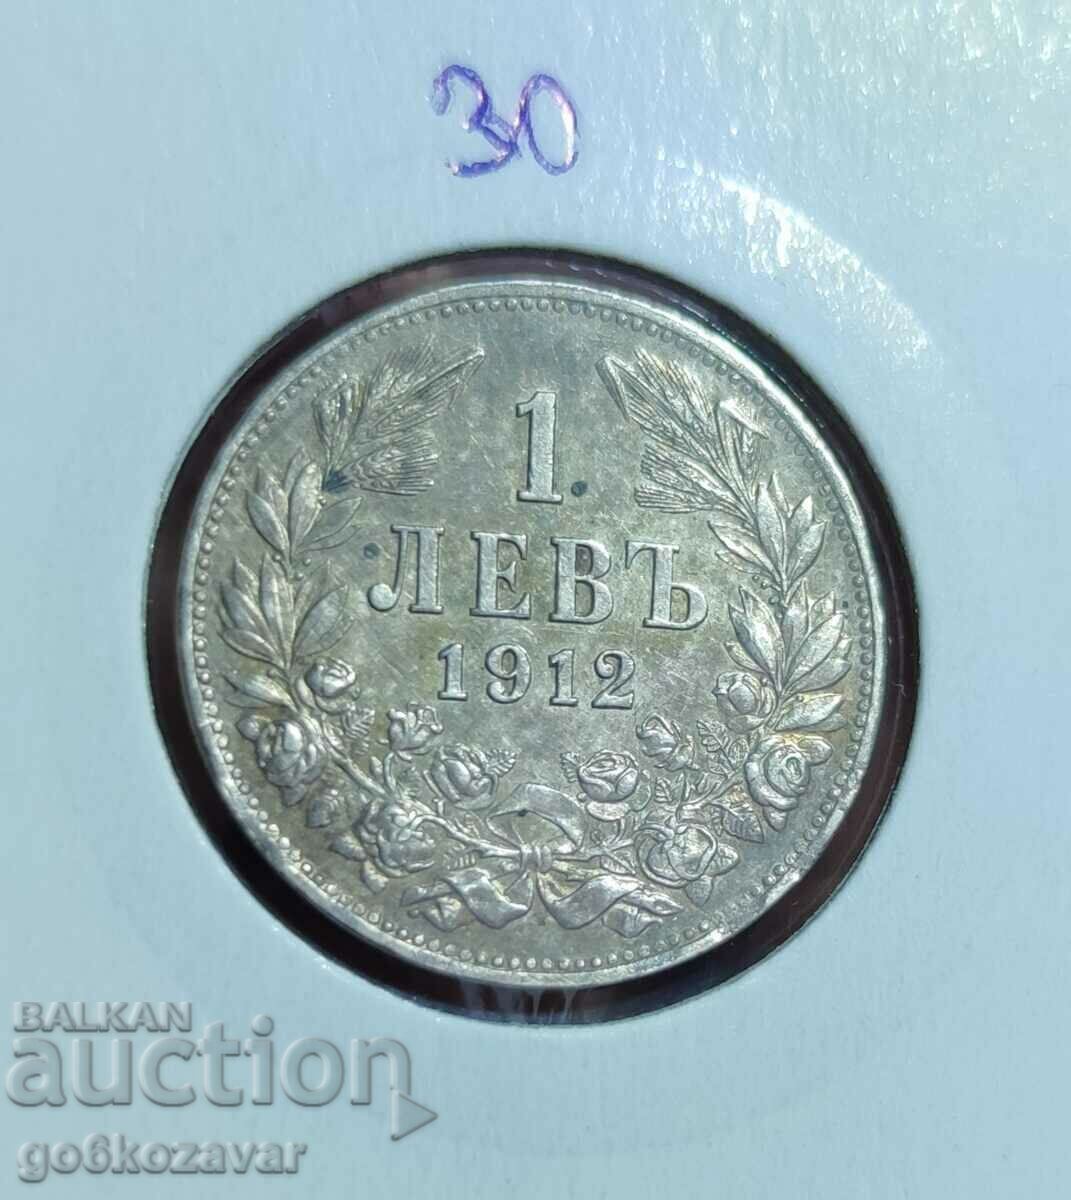 Συλλογή Silver Top Collection Bulgaria 1 Lev 1912!